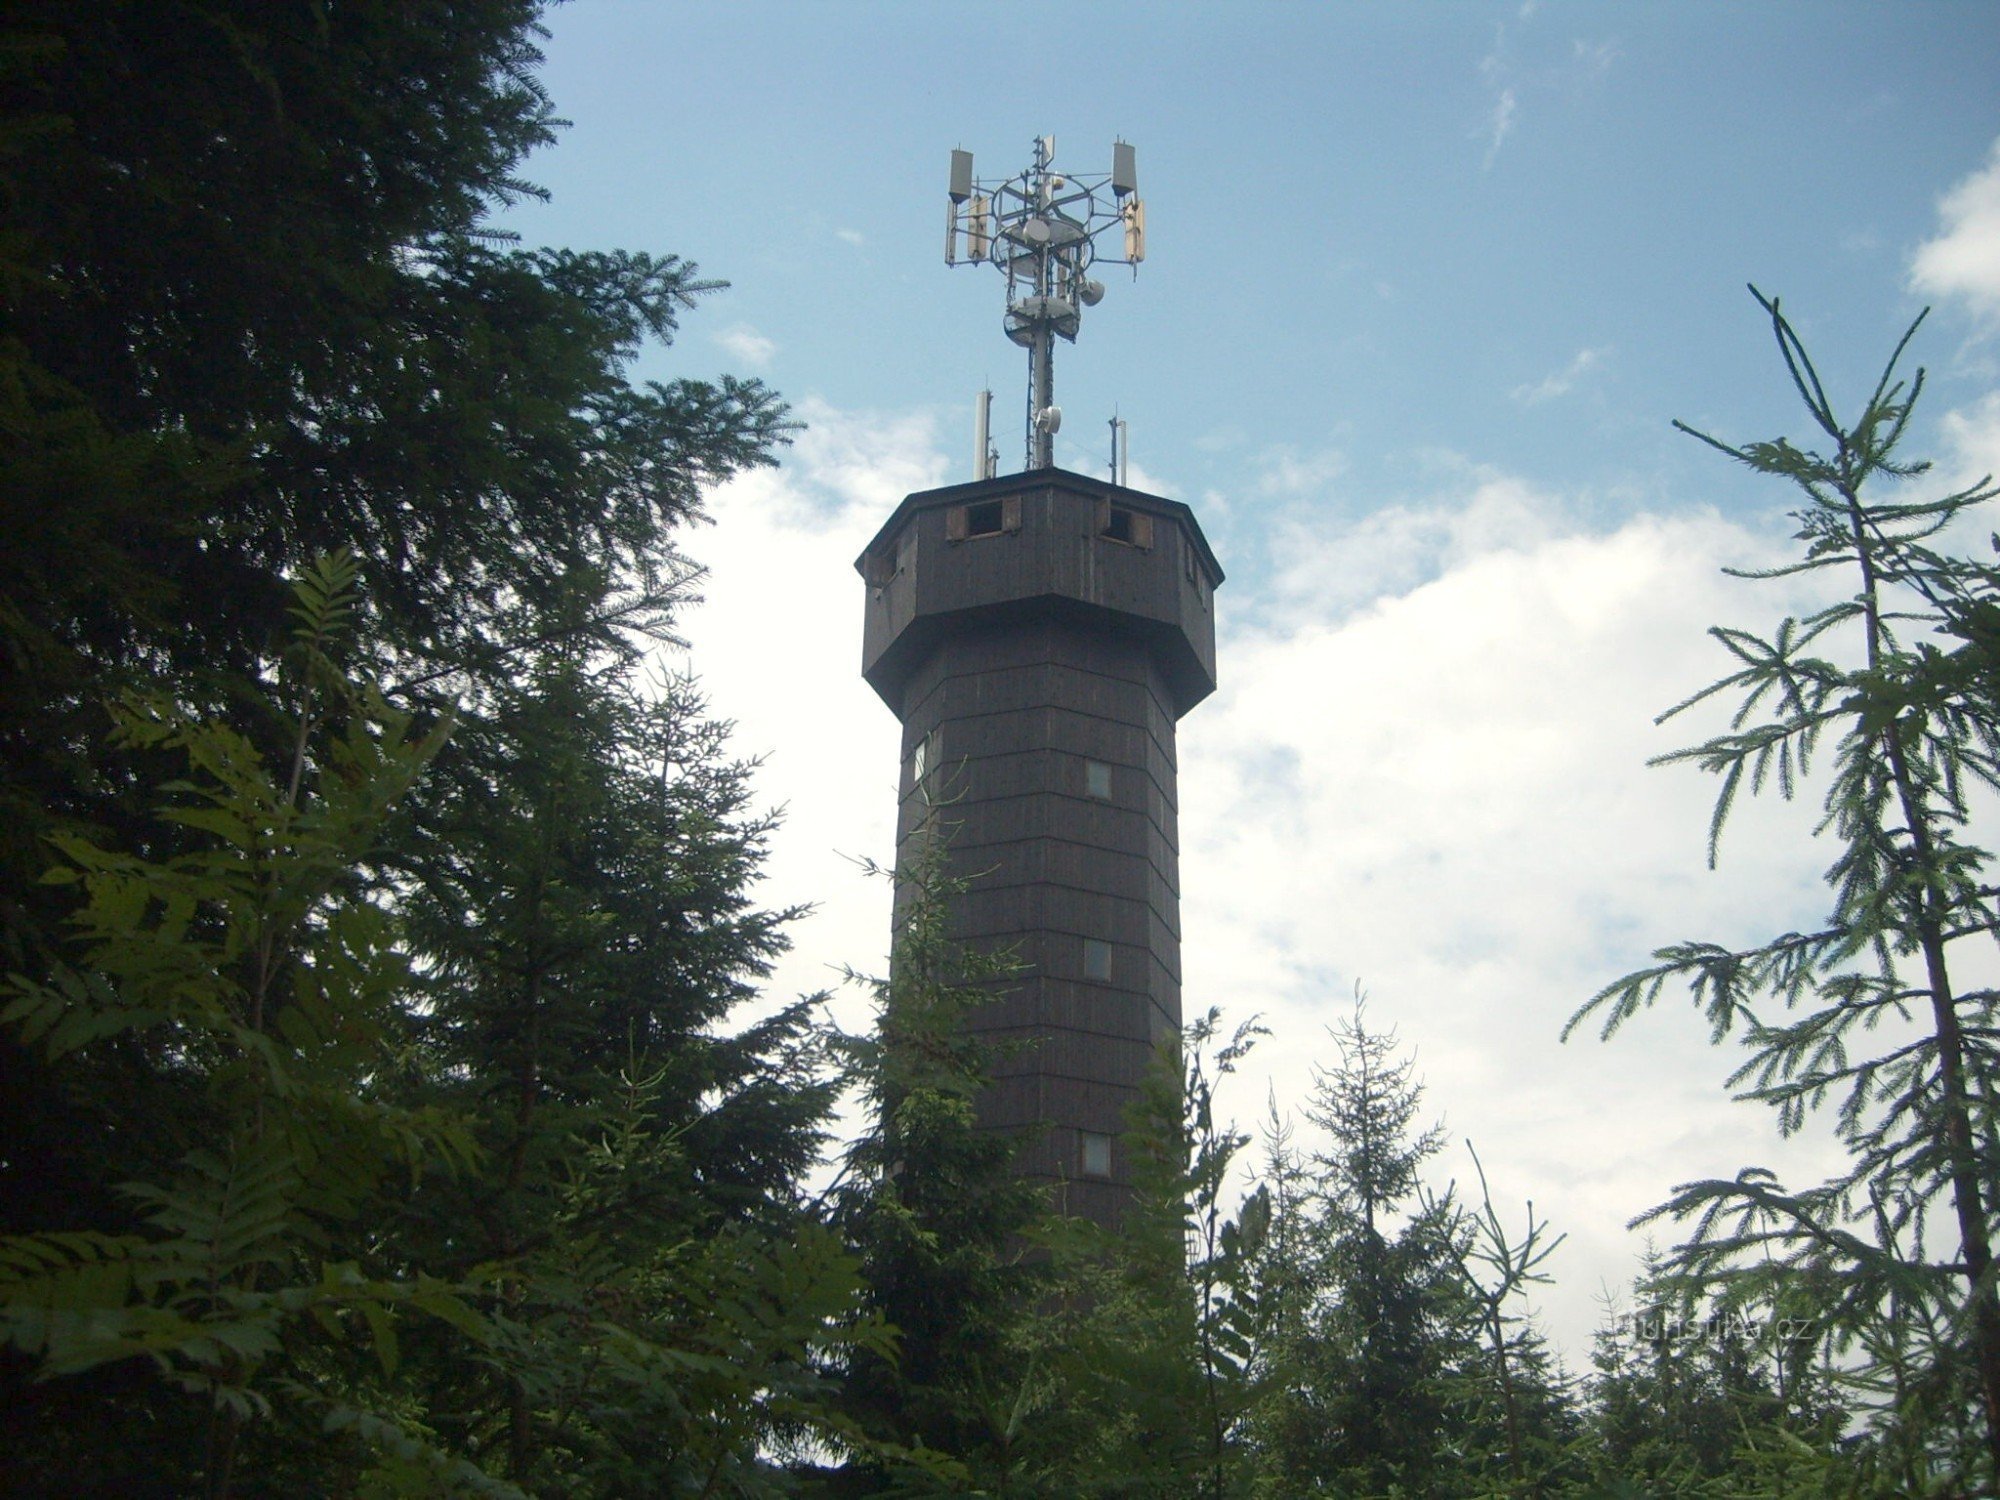 telekomunikacijski toranj s osmatračnicom